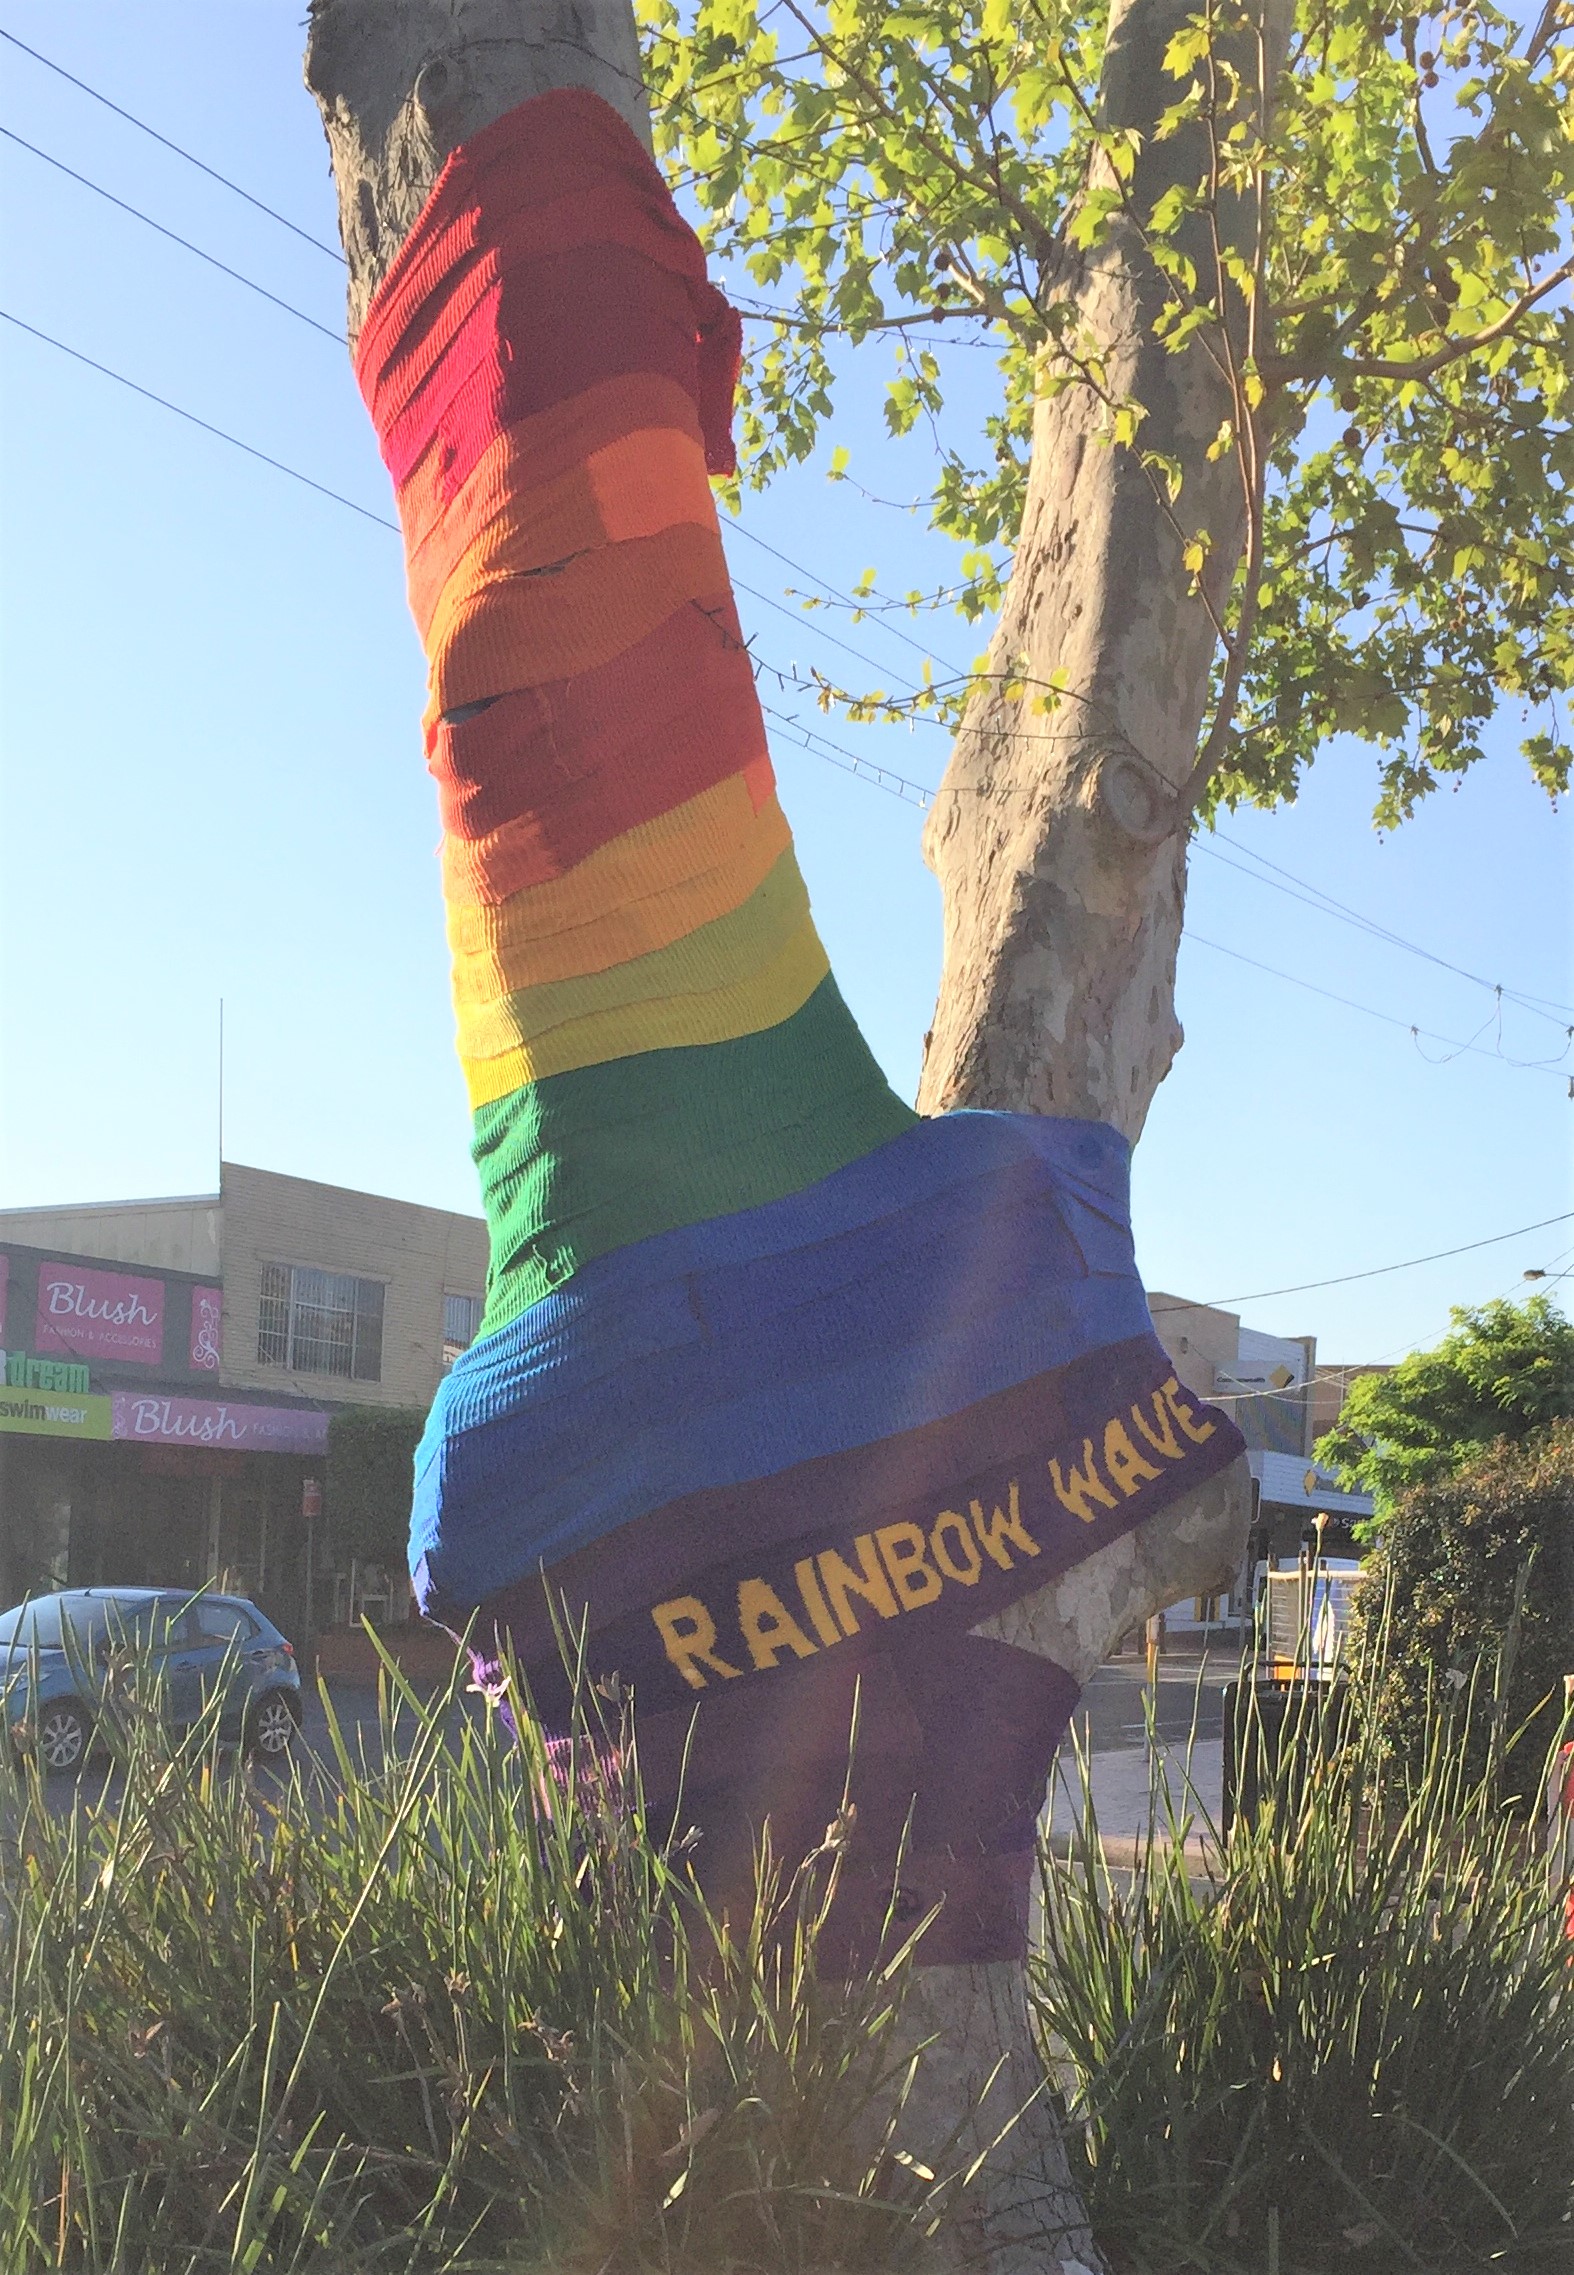 Merimbula yarnbombing in support of LGBTQI community vandalised